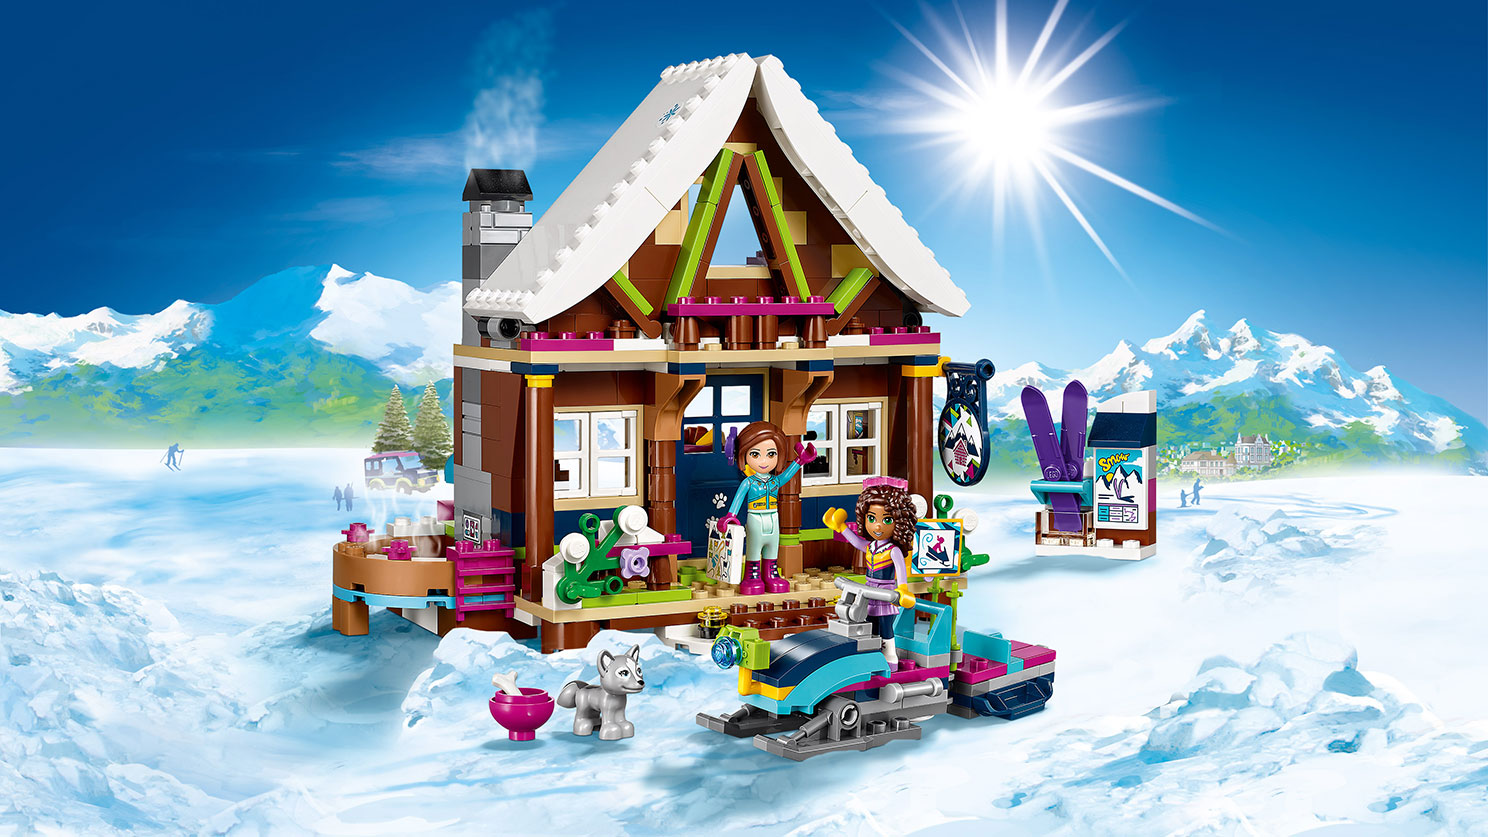 Geometri Melting Skat Snow Resort Chalet 41323 - - LEGO.com for kids